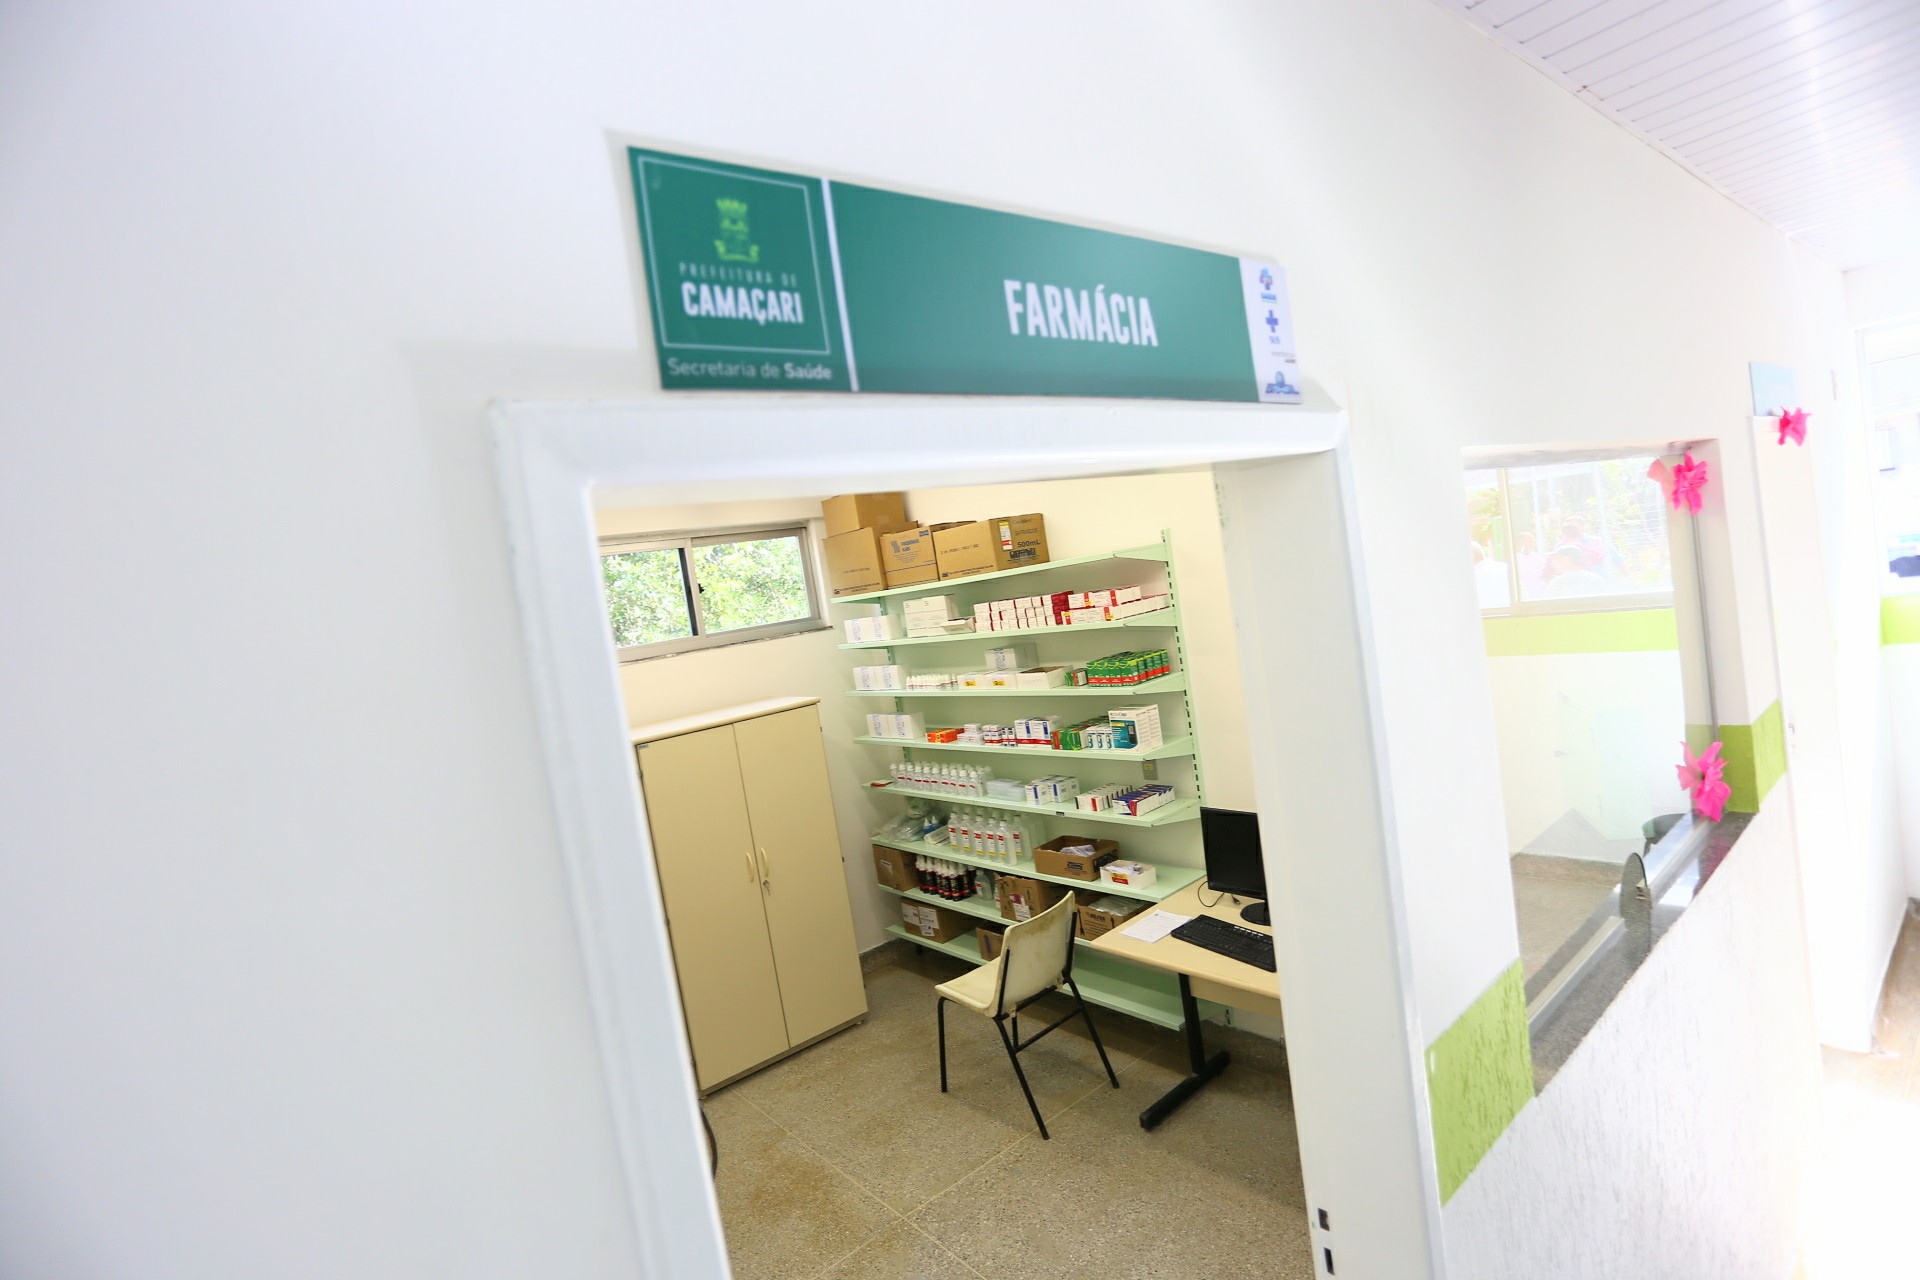 Prefeitura de Camaçari anuncia a reabertura de quatro farmácias